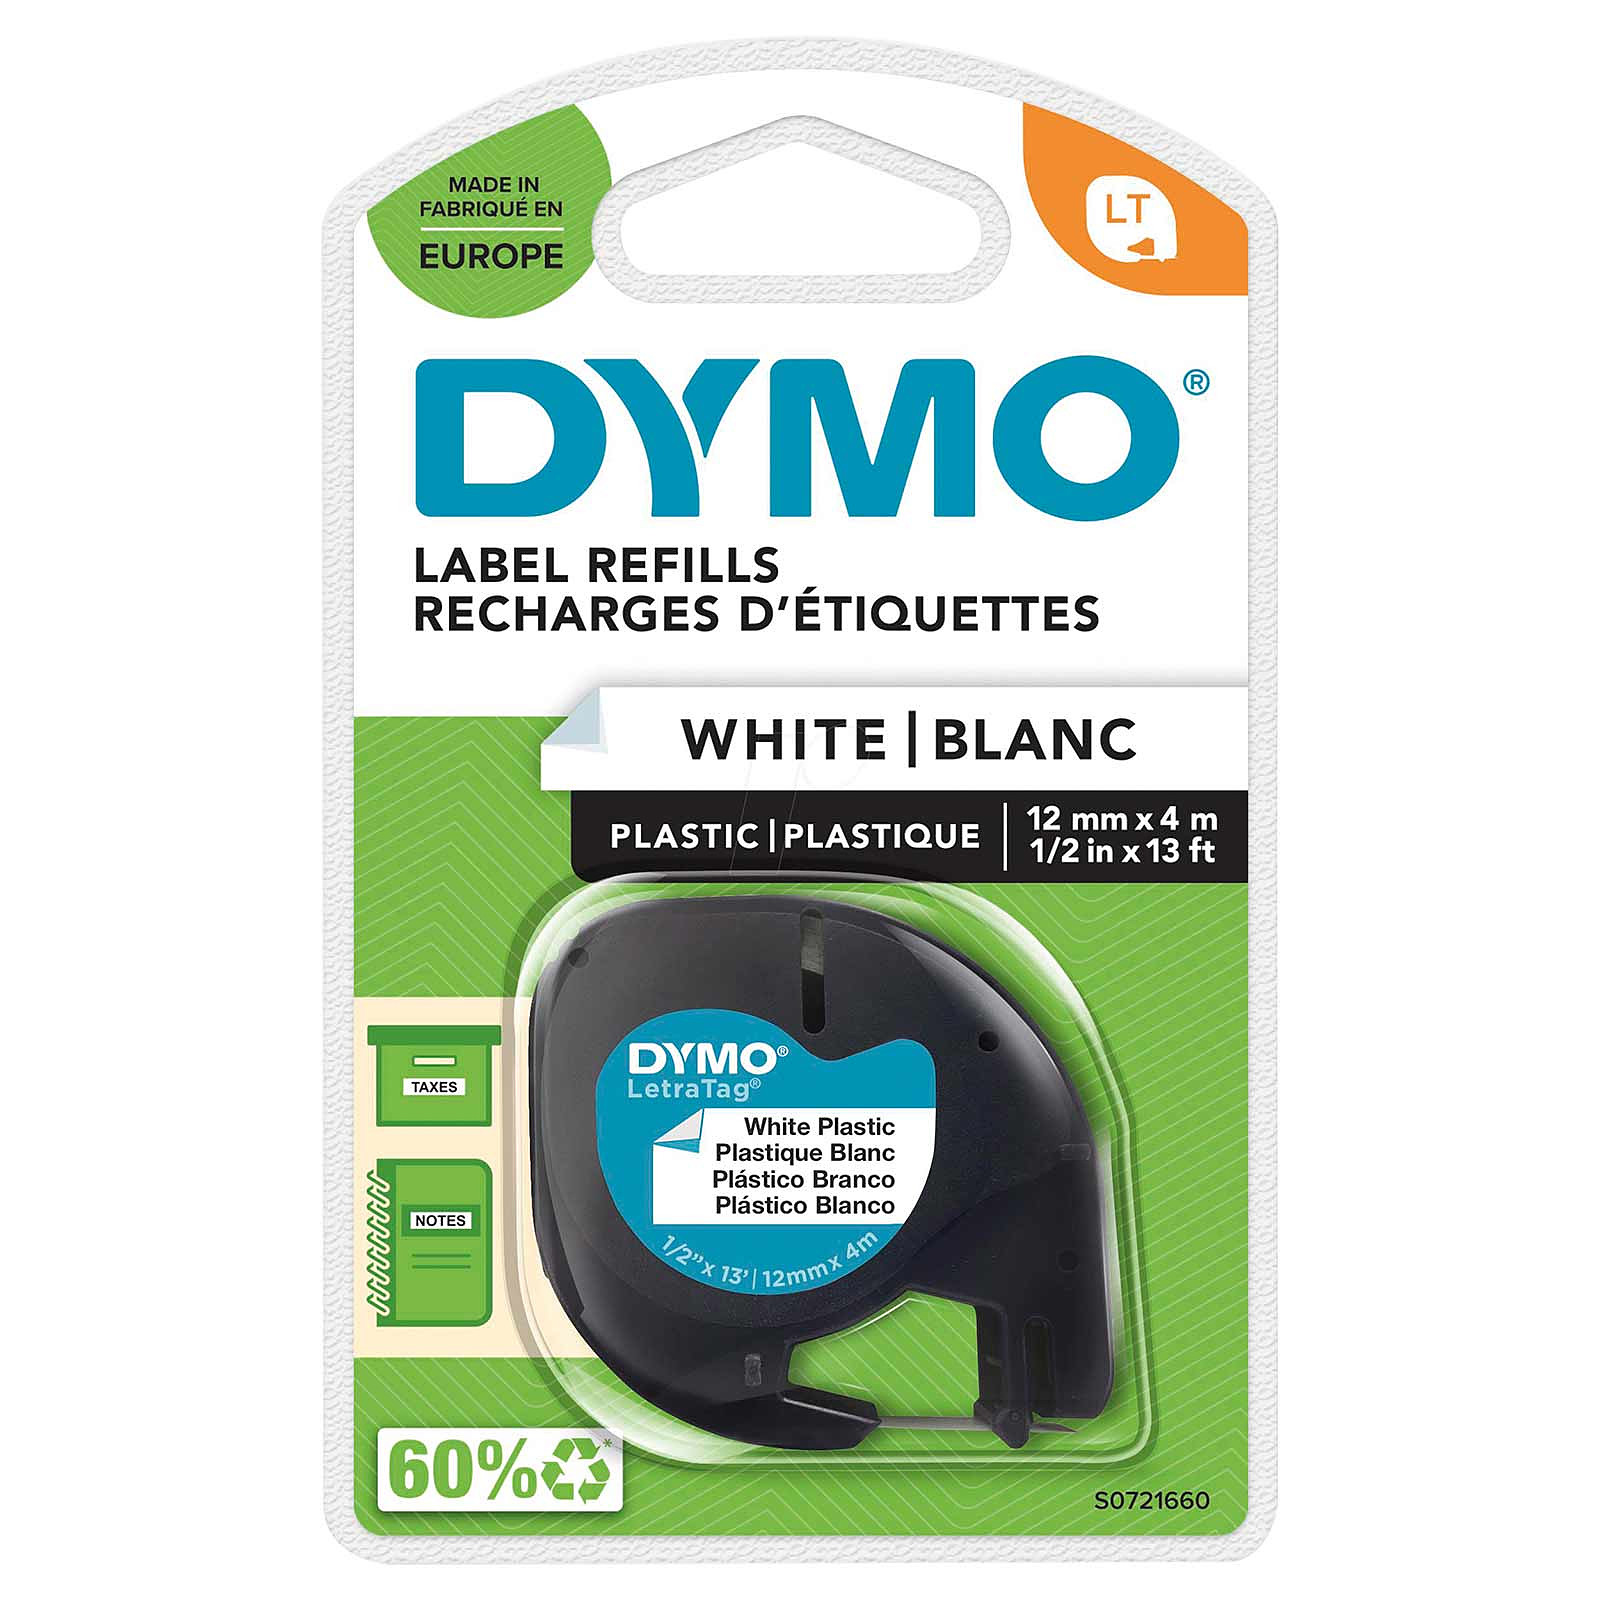 S0721660 - Dymo Ruban LT S0721660 plastique pour étiqueteuse LetraTag - 12 mm x 4 m - Noir sur Blanc